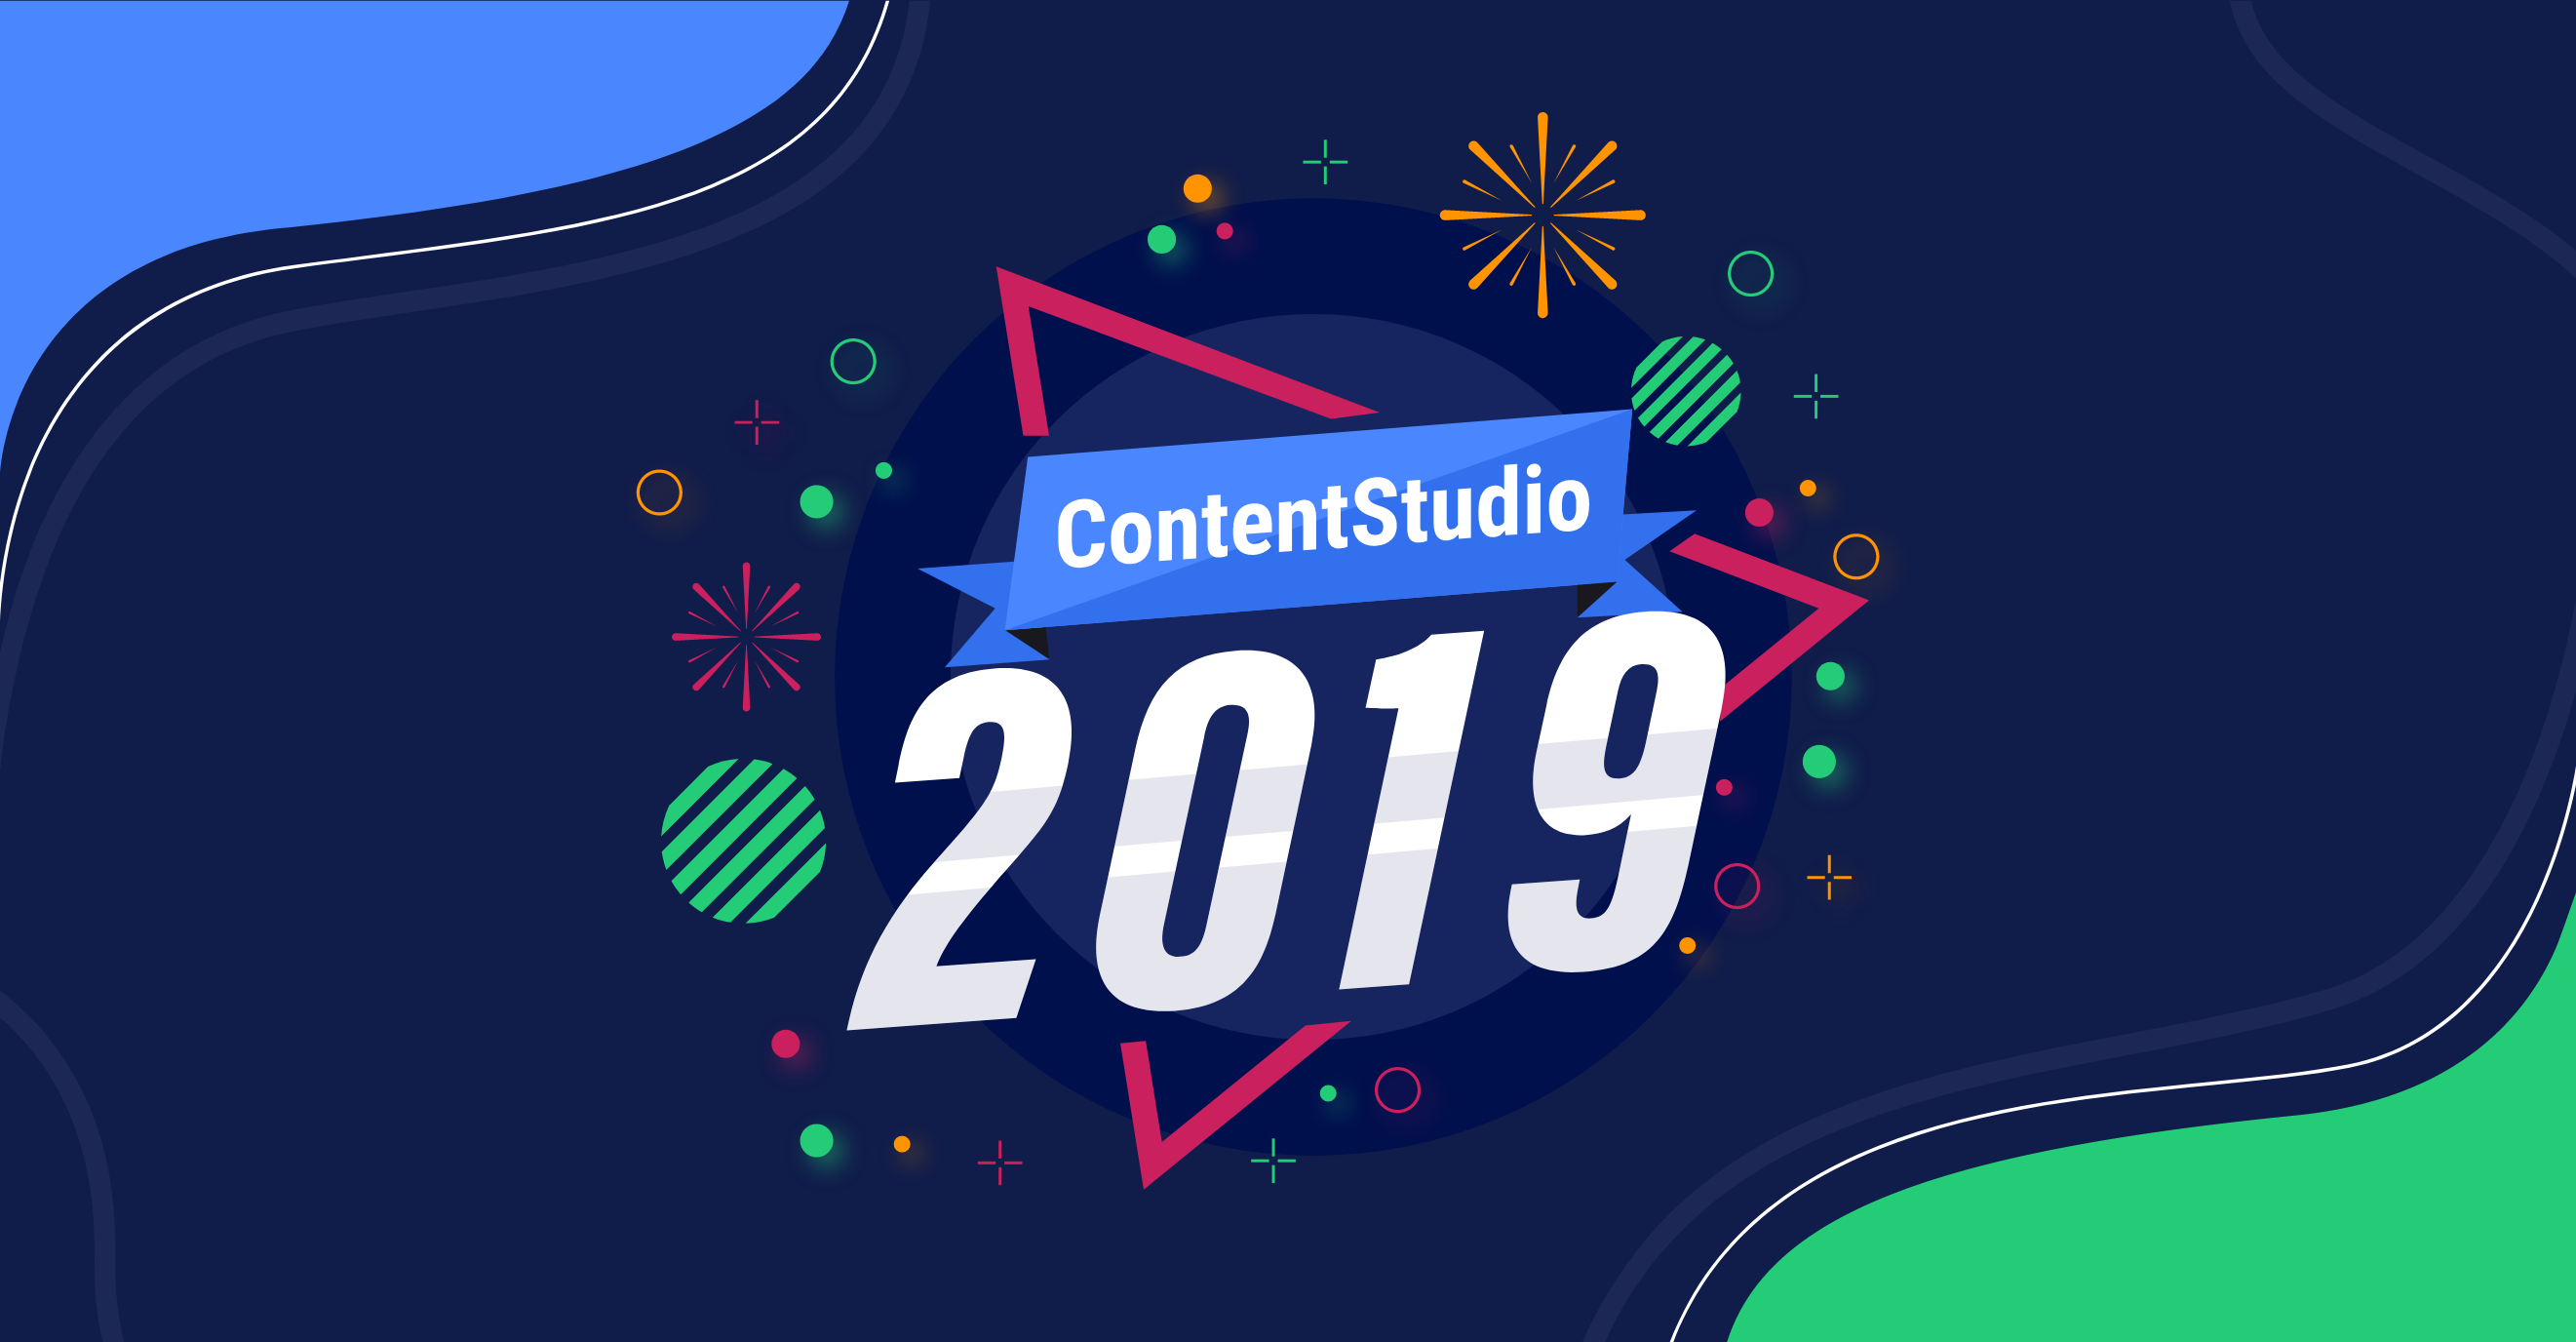 ContentStudio in 2019